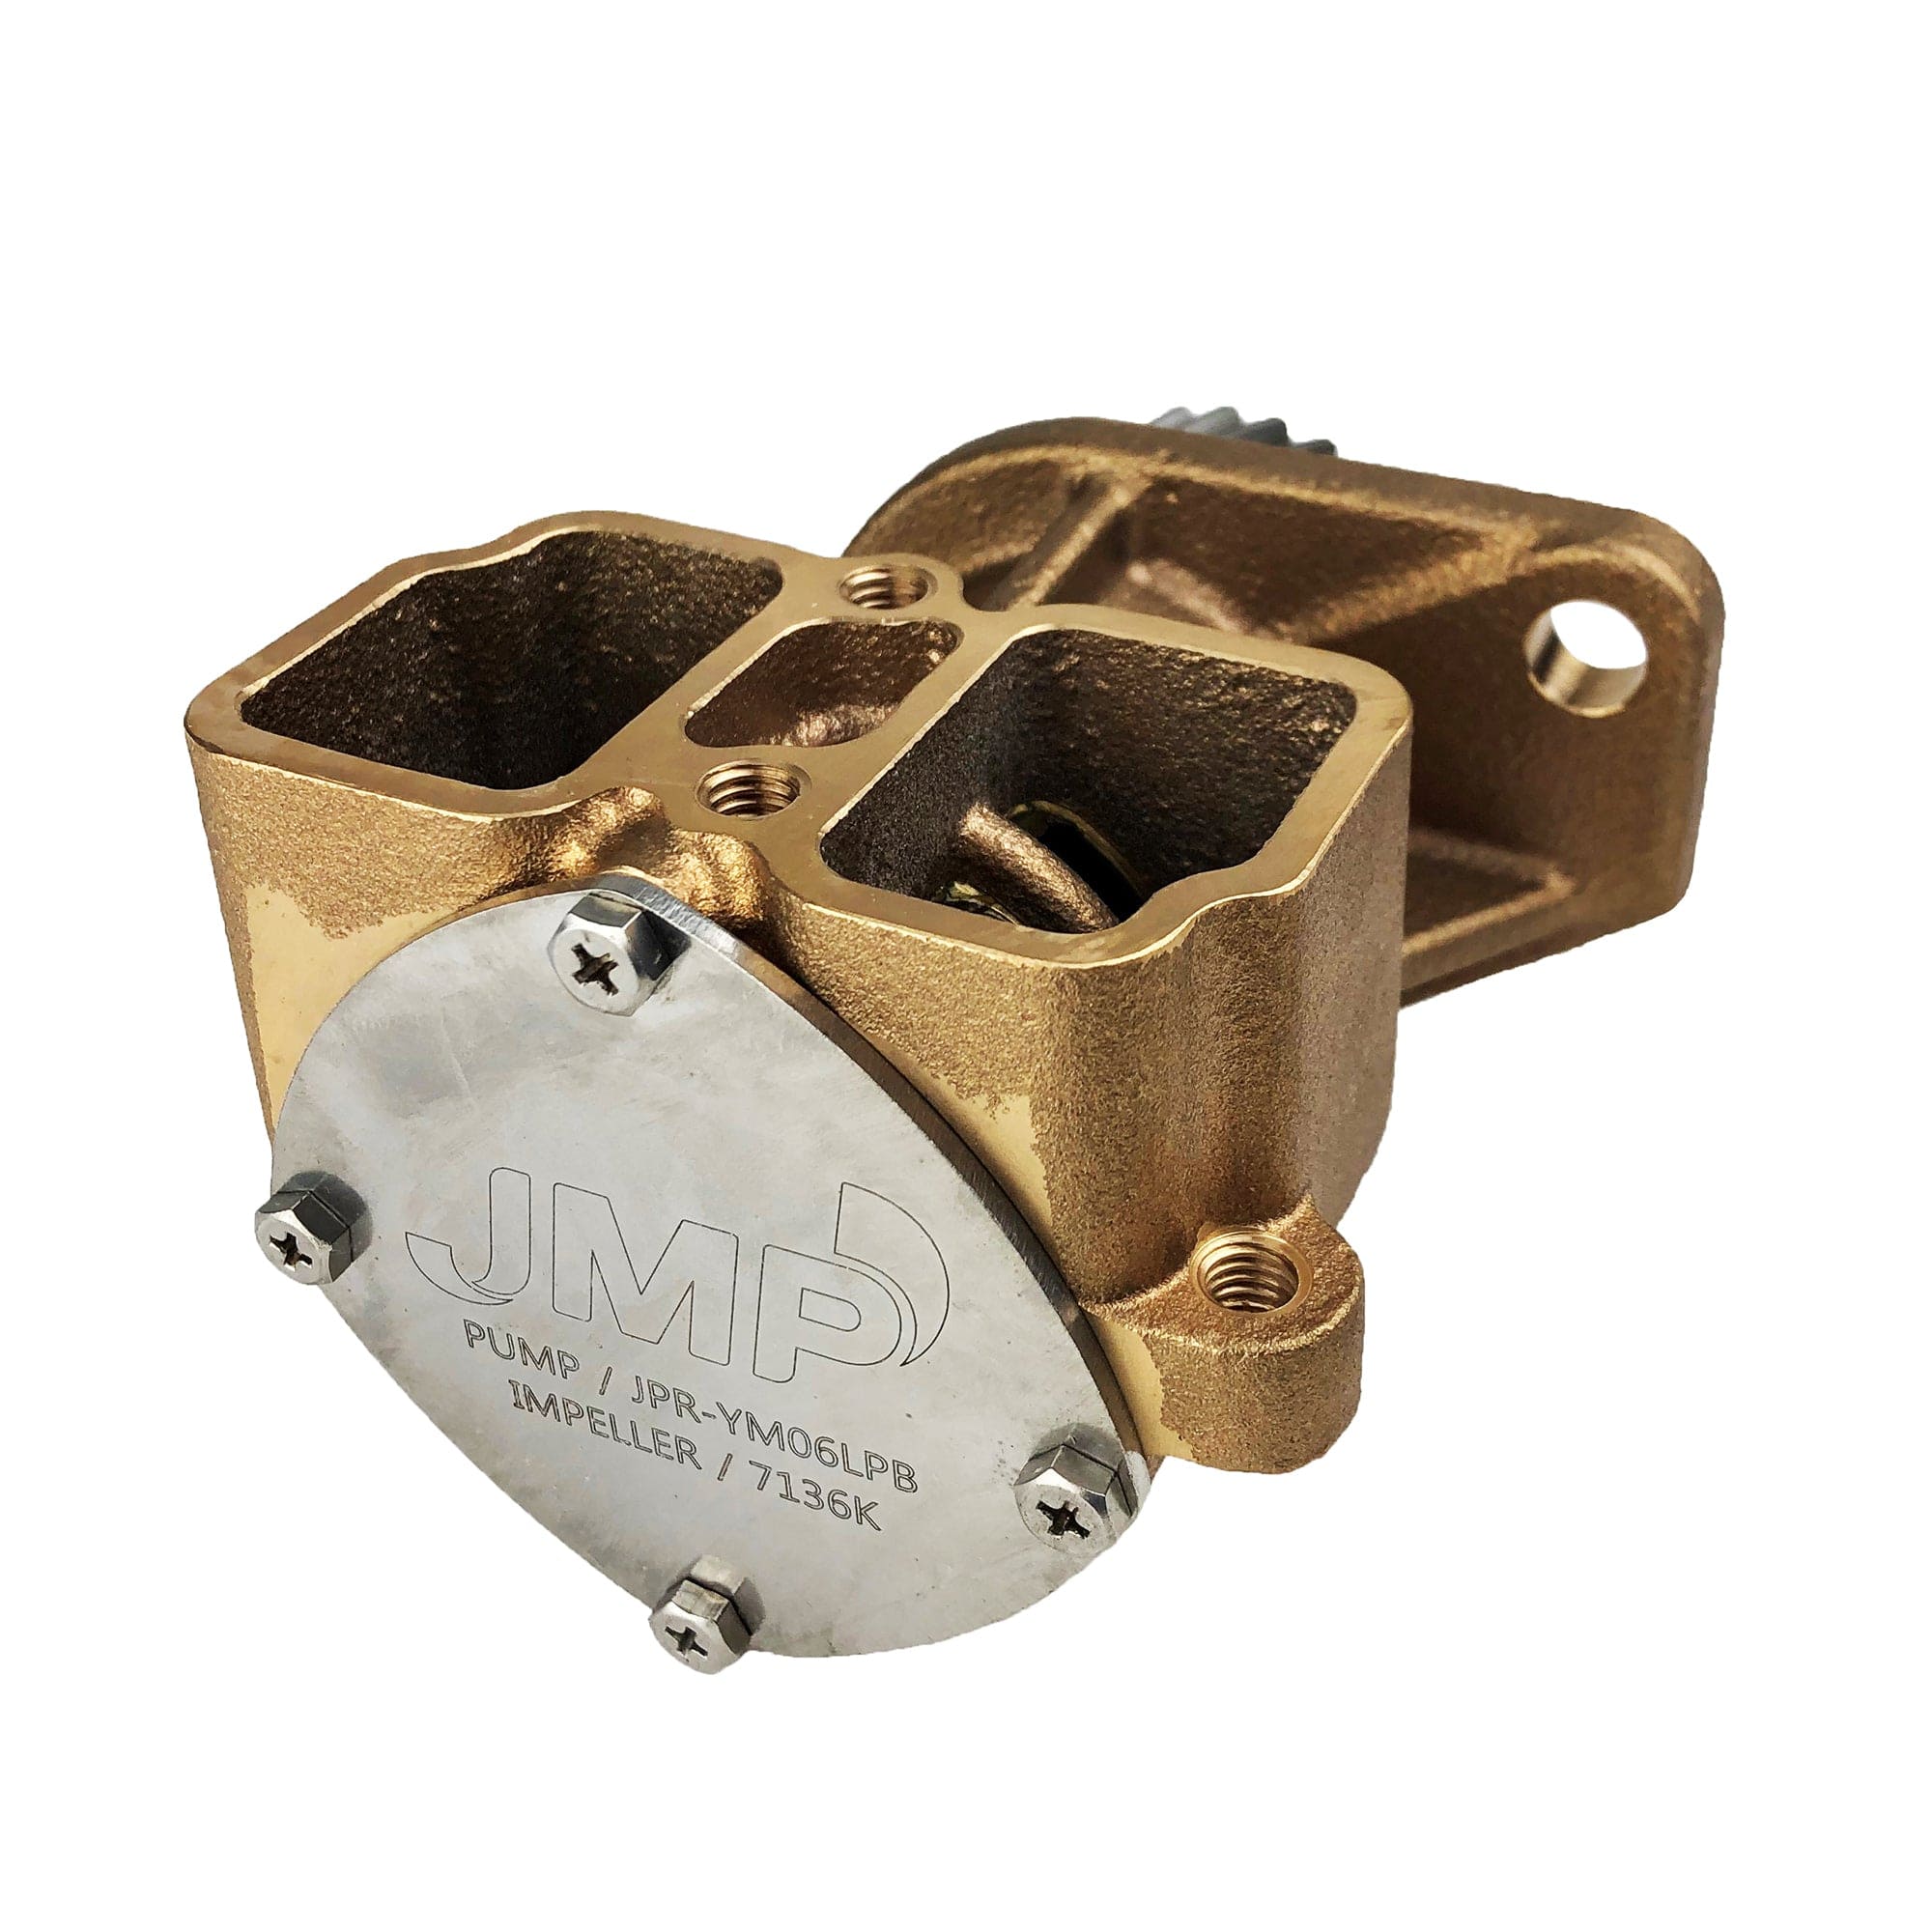 JMP Marine JPR-YM06LPB Yanmar Replacement Engine Cooling Seawater Pump